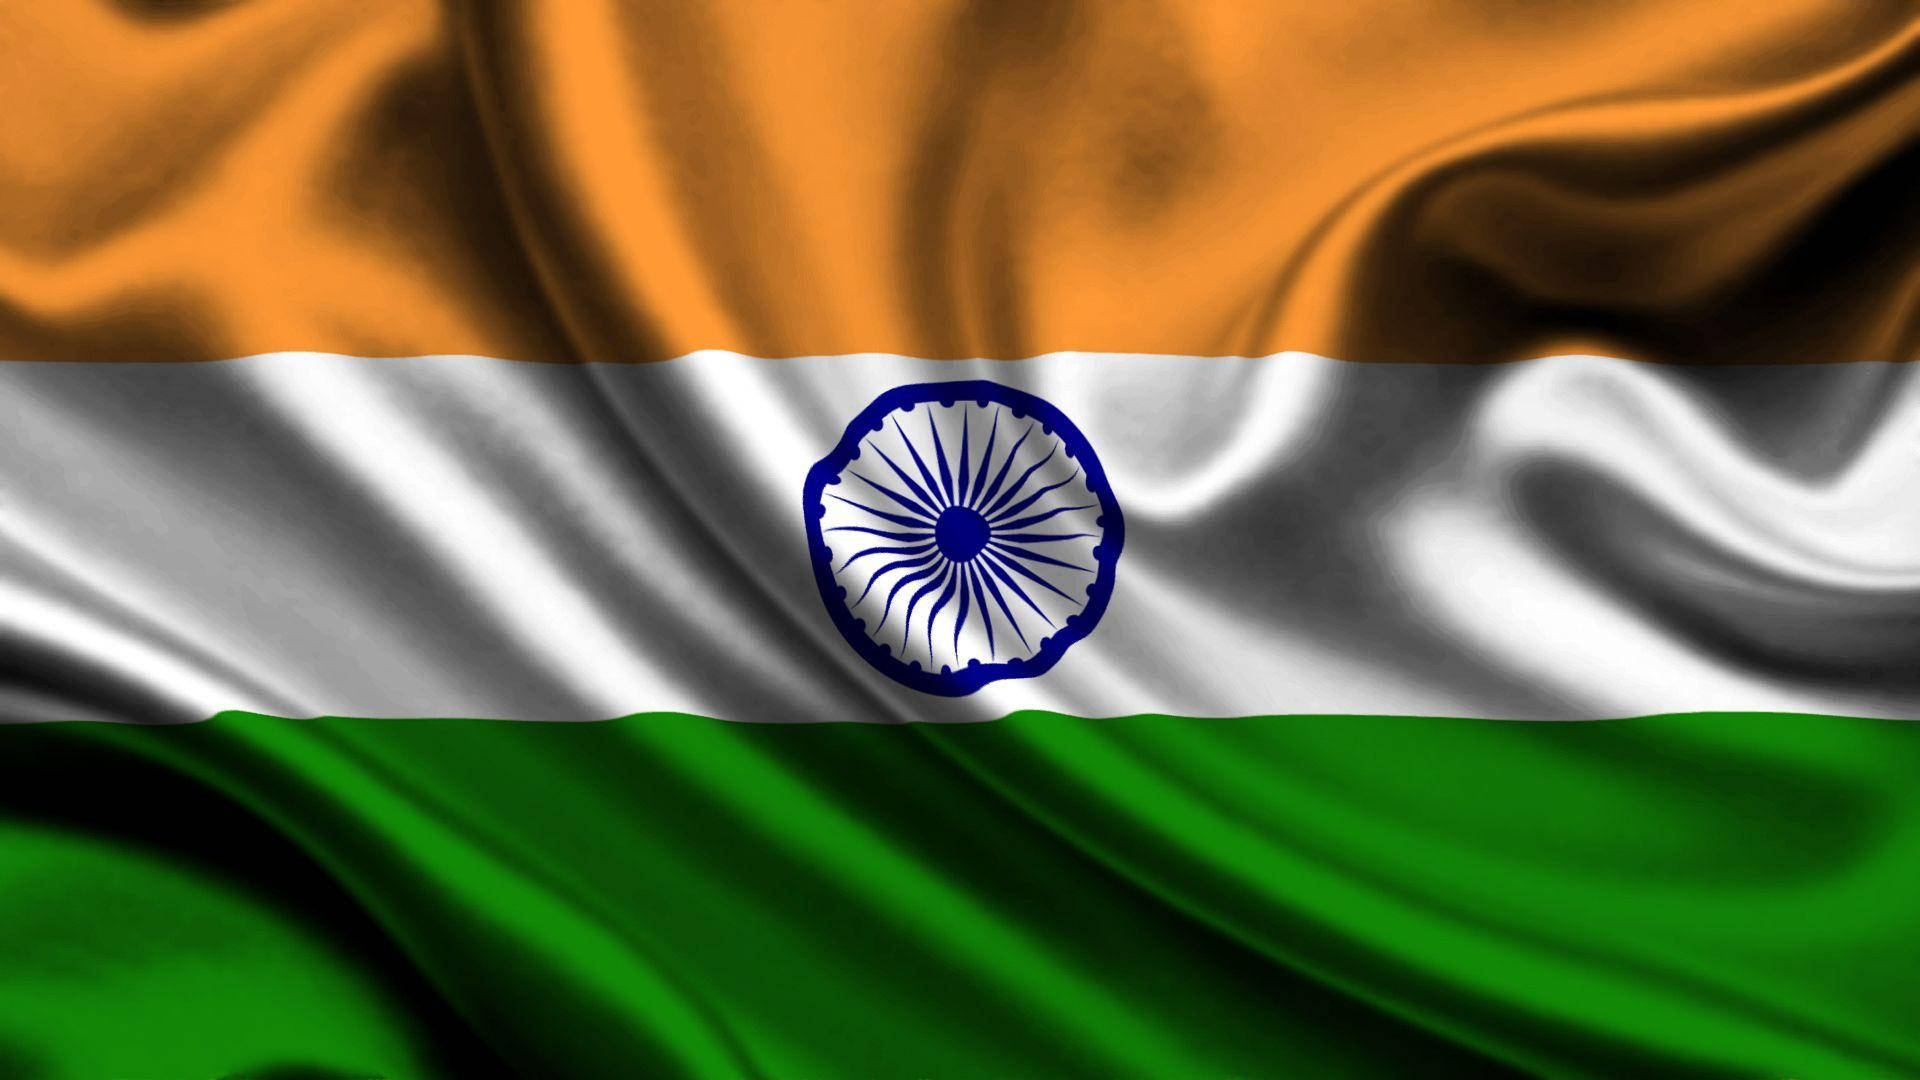 Imágenes De La Bandera De India En Alta Definición